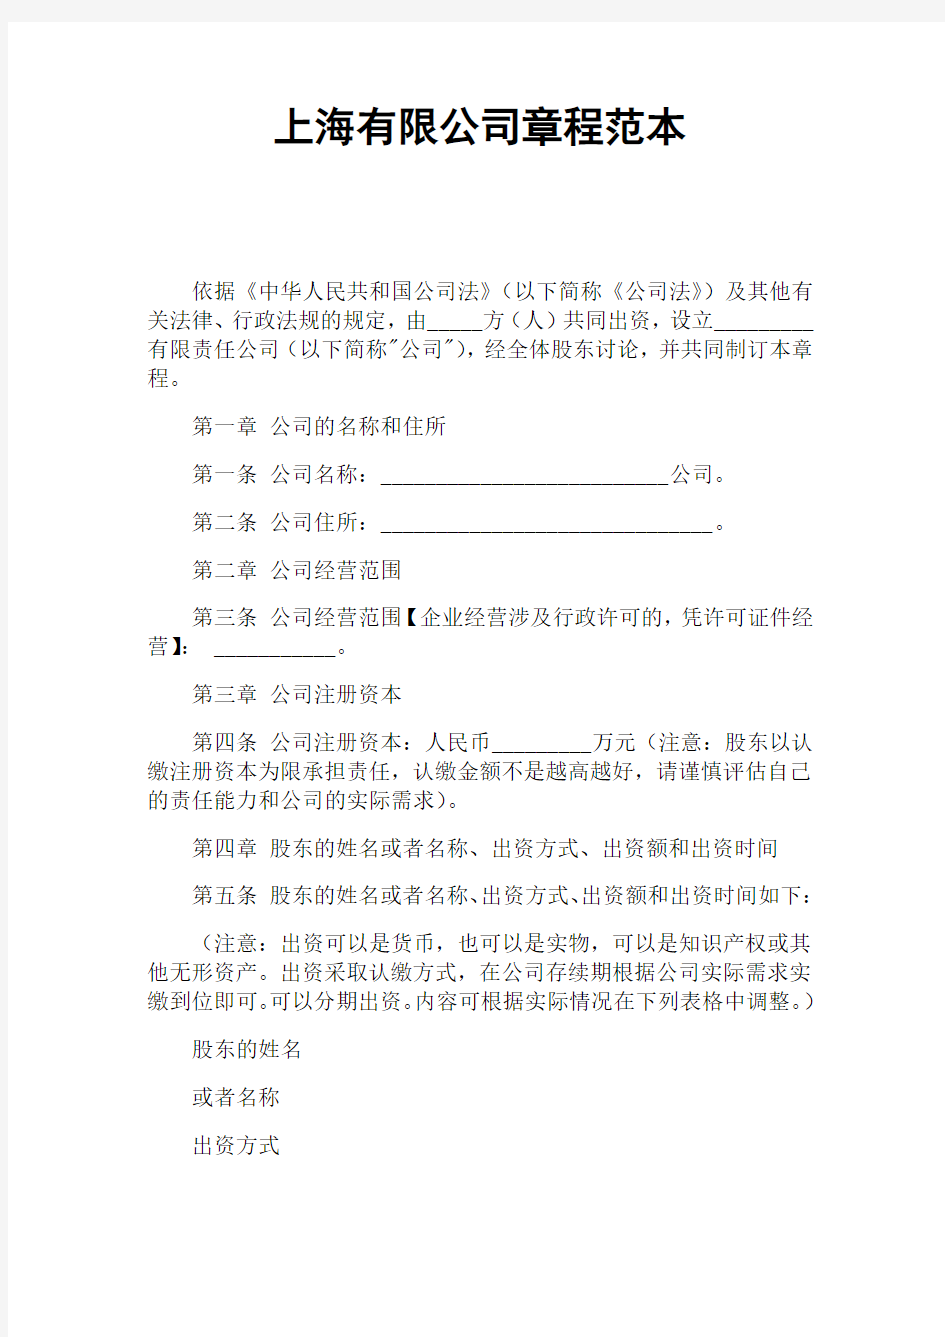 上海有限公司章程